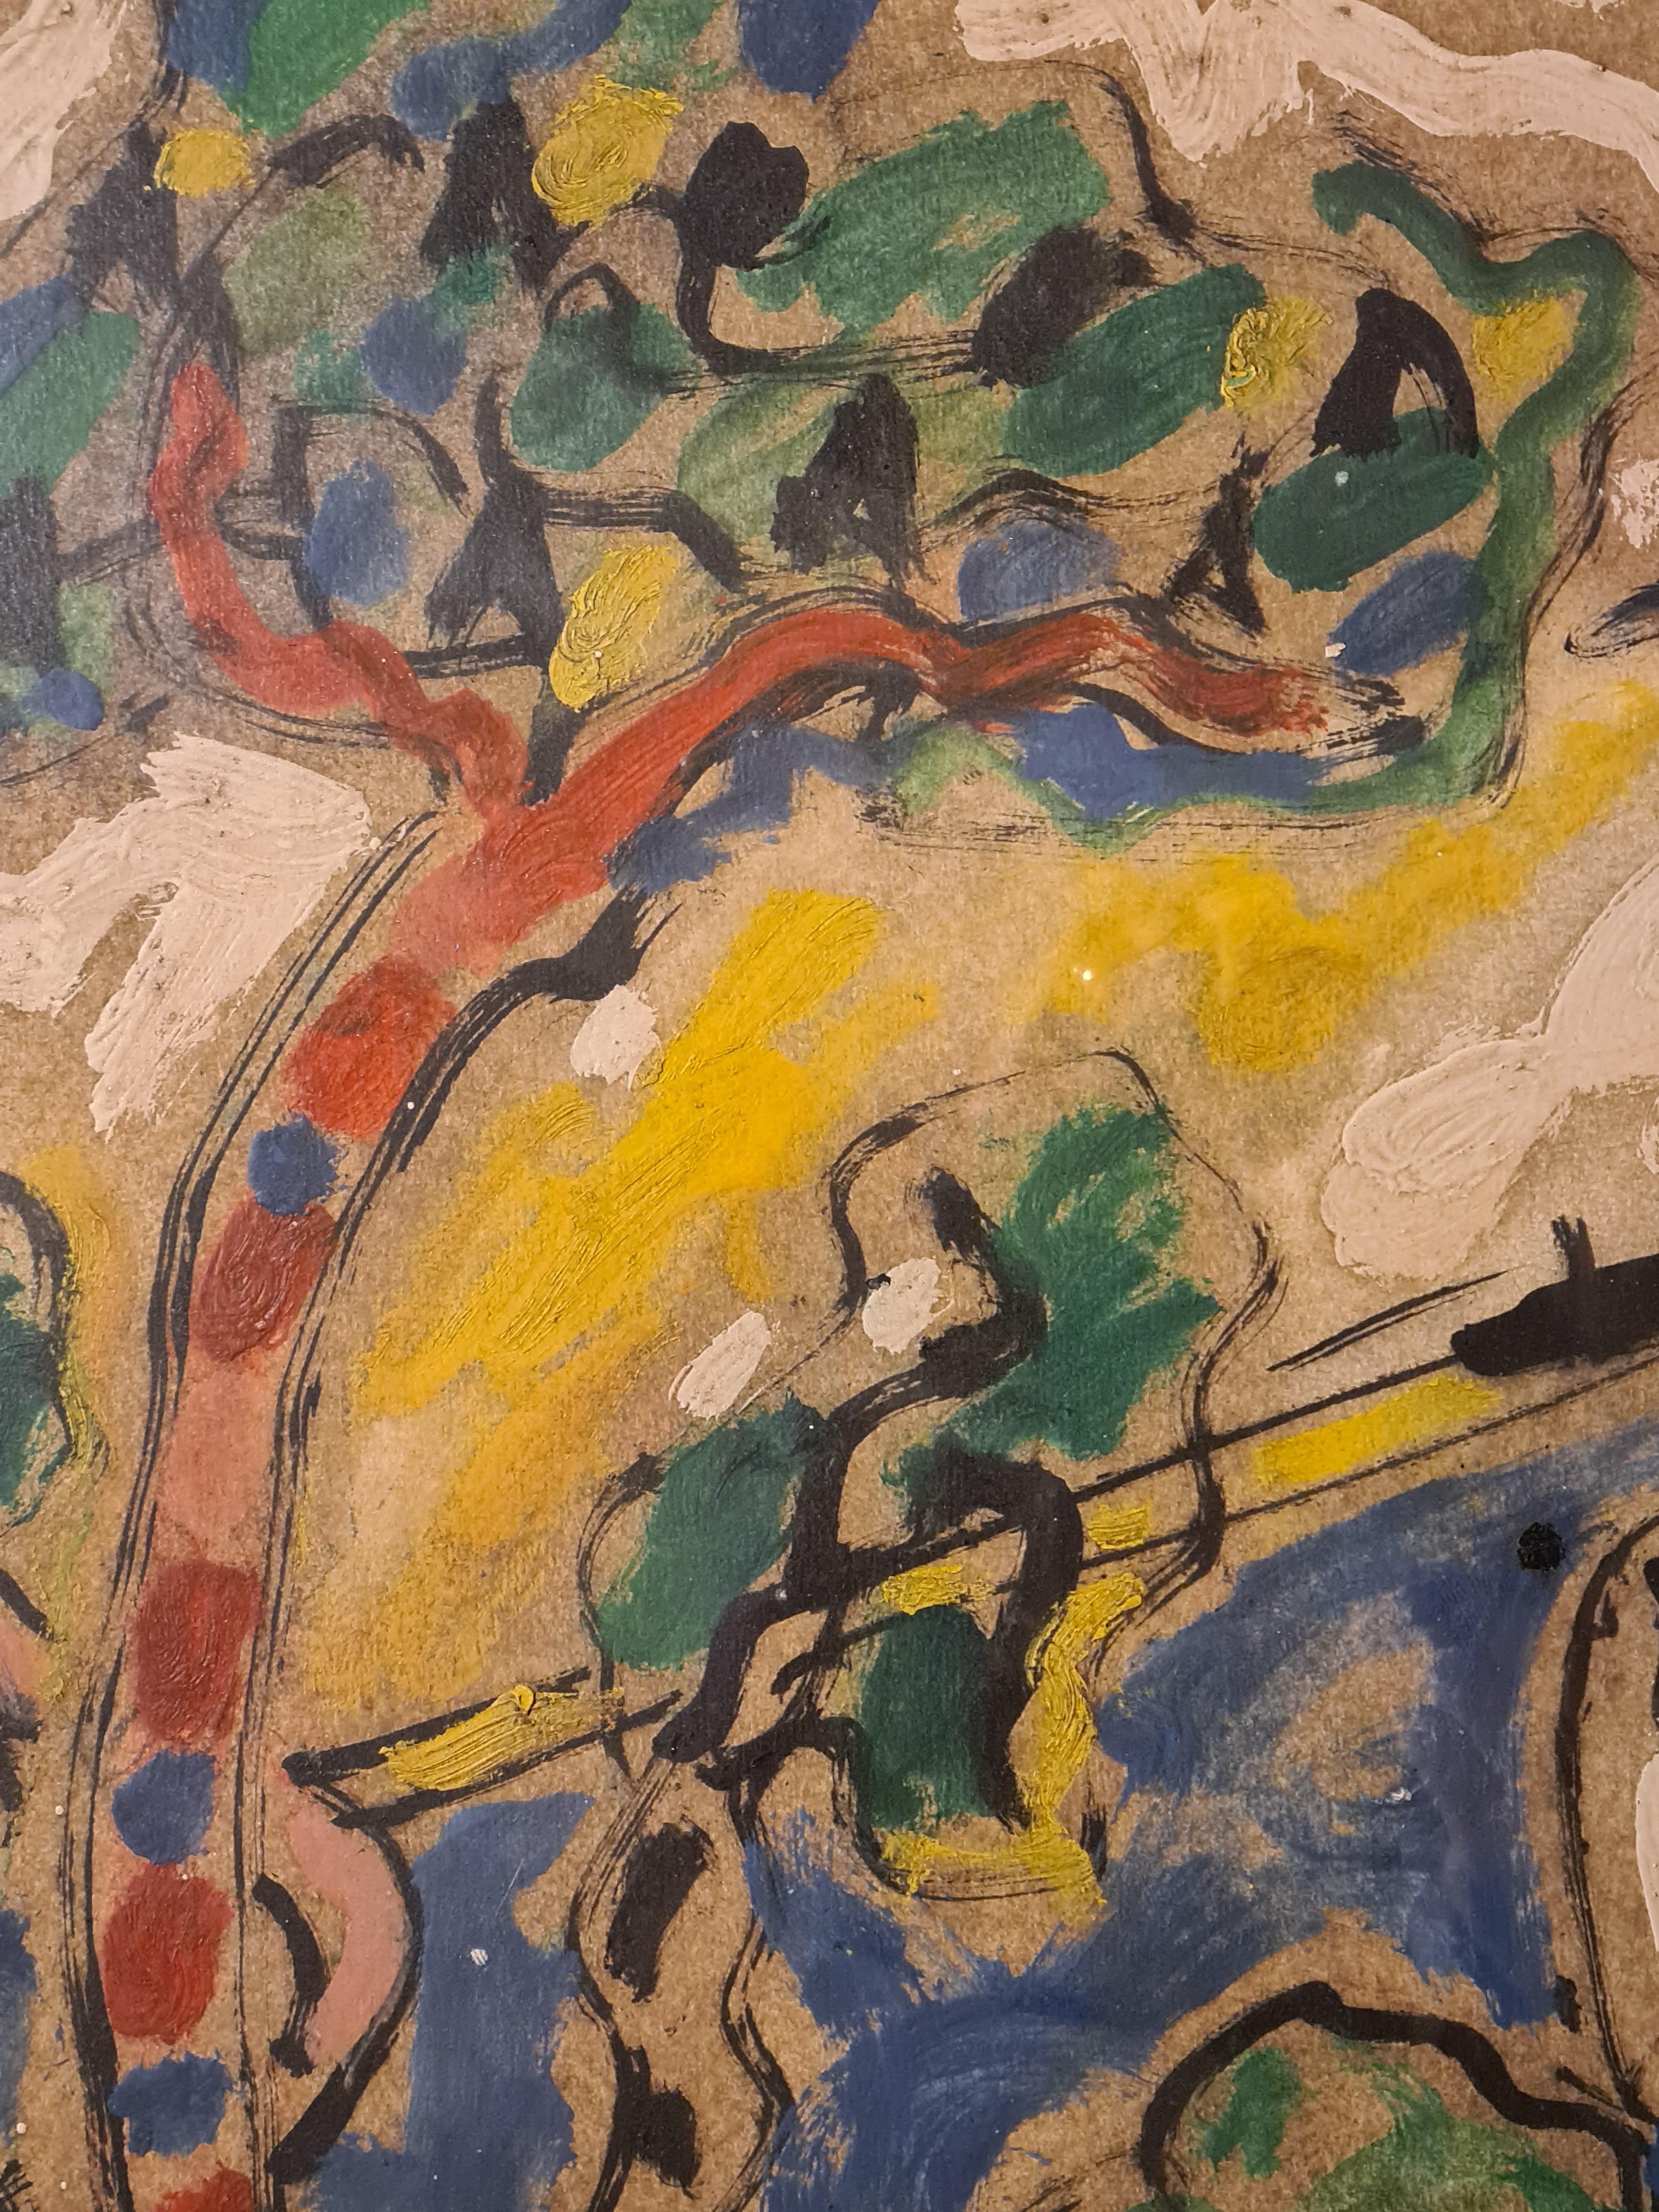 Œuvre sur papier de la fin du 20e siècle représentant un port de l'artiste français Armand Avril. Signé et daté en bas à gauche, présenté sous verre dans un cadre neuf fait sur mesure. Avec une dédicace au dos, voir photo.

Pendant cette période,